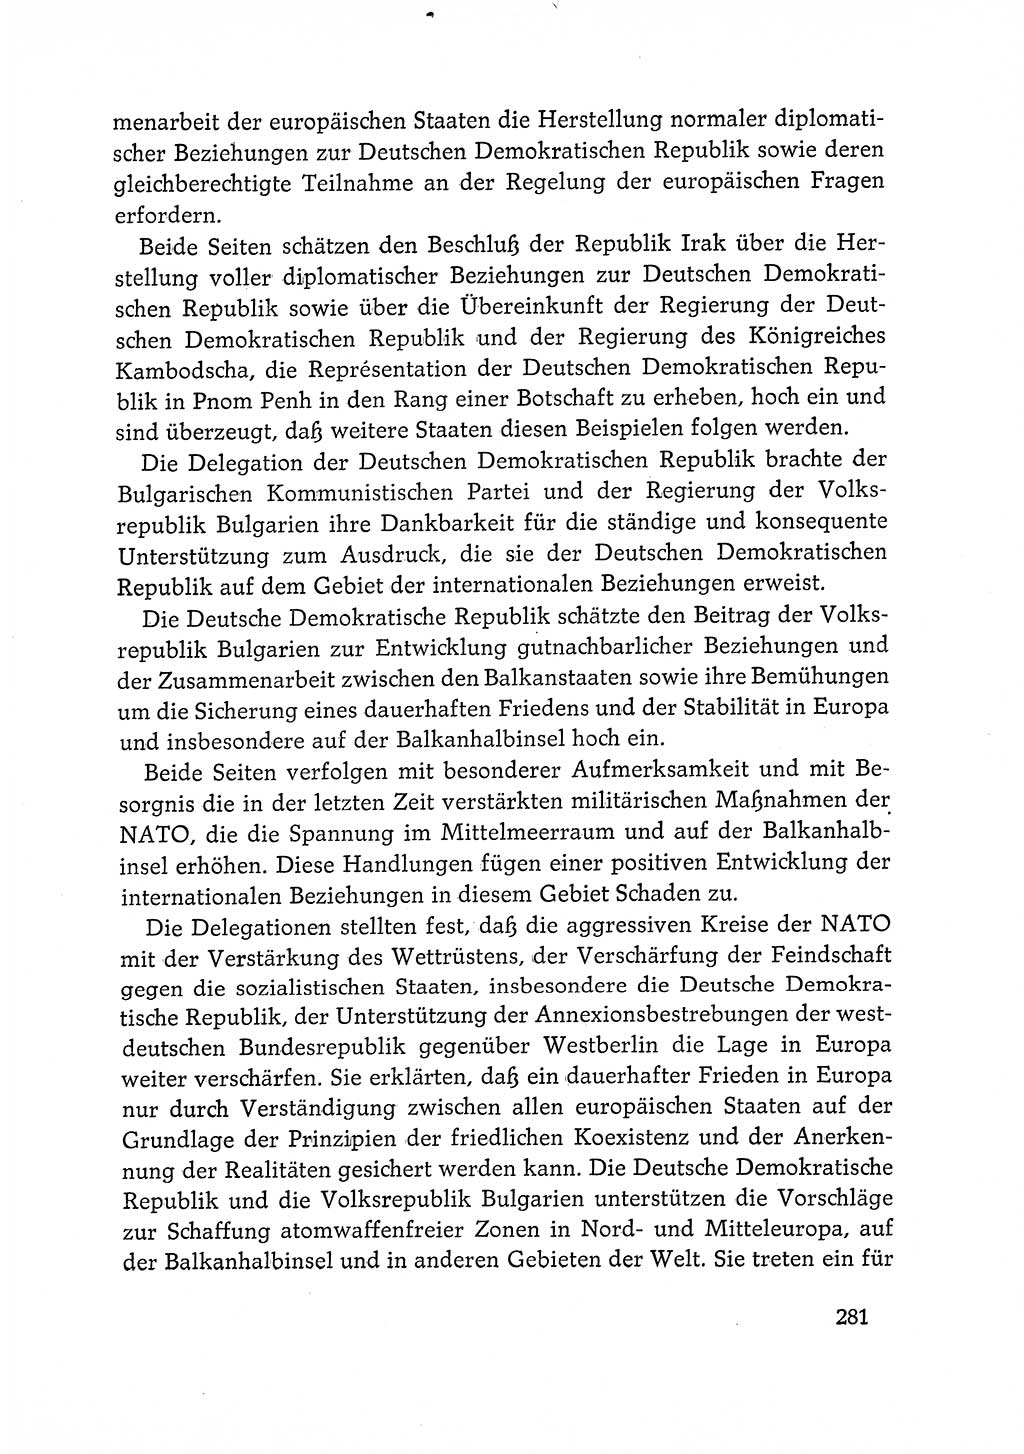 Dokumente der Sozialistischen Einheitspartei Deutschlands (SED) [Deutsche Demokratische Republik (DDR)] 1968-1969, Seite 281 (Dok. SED DDR 1968-1969, S. 281)